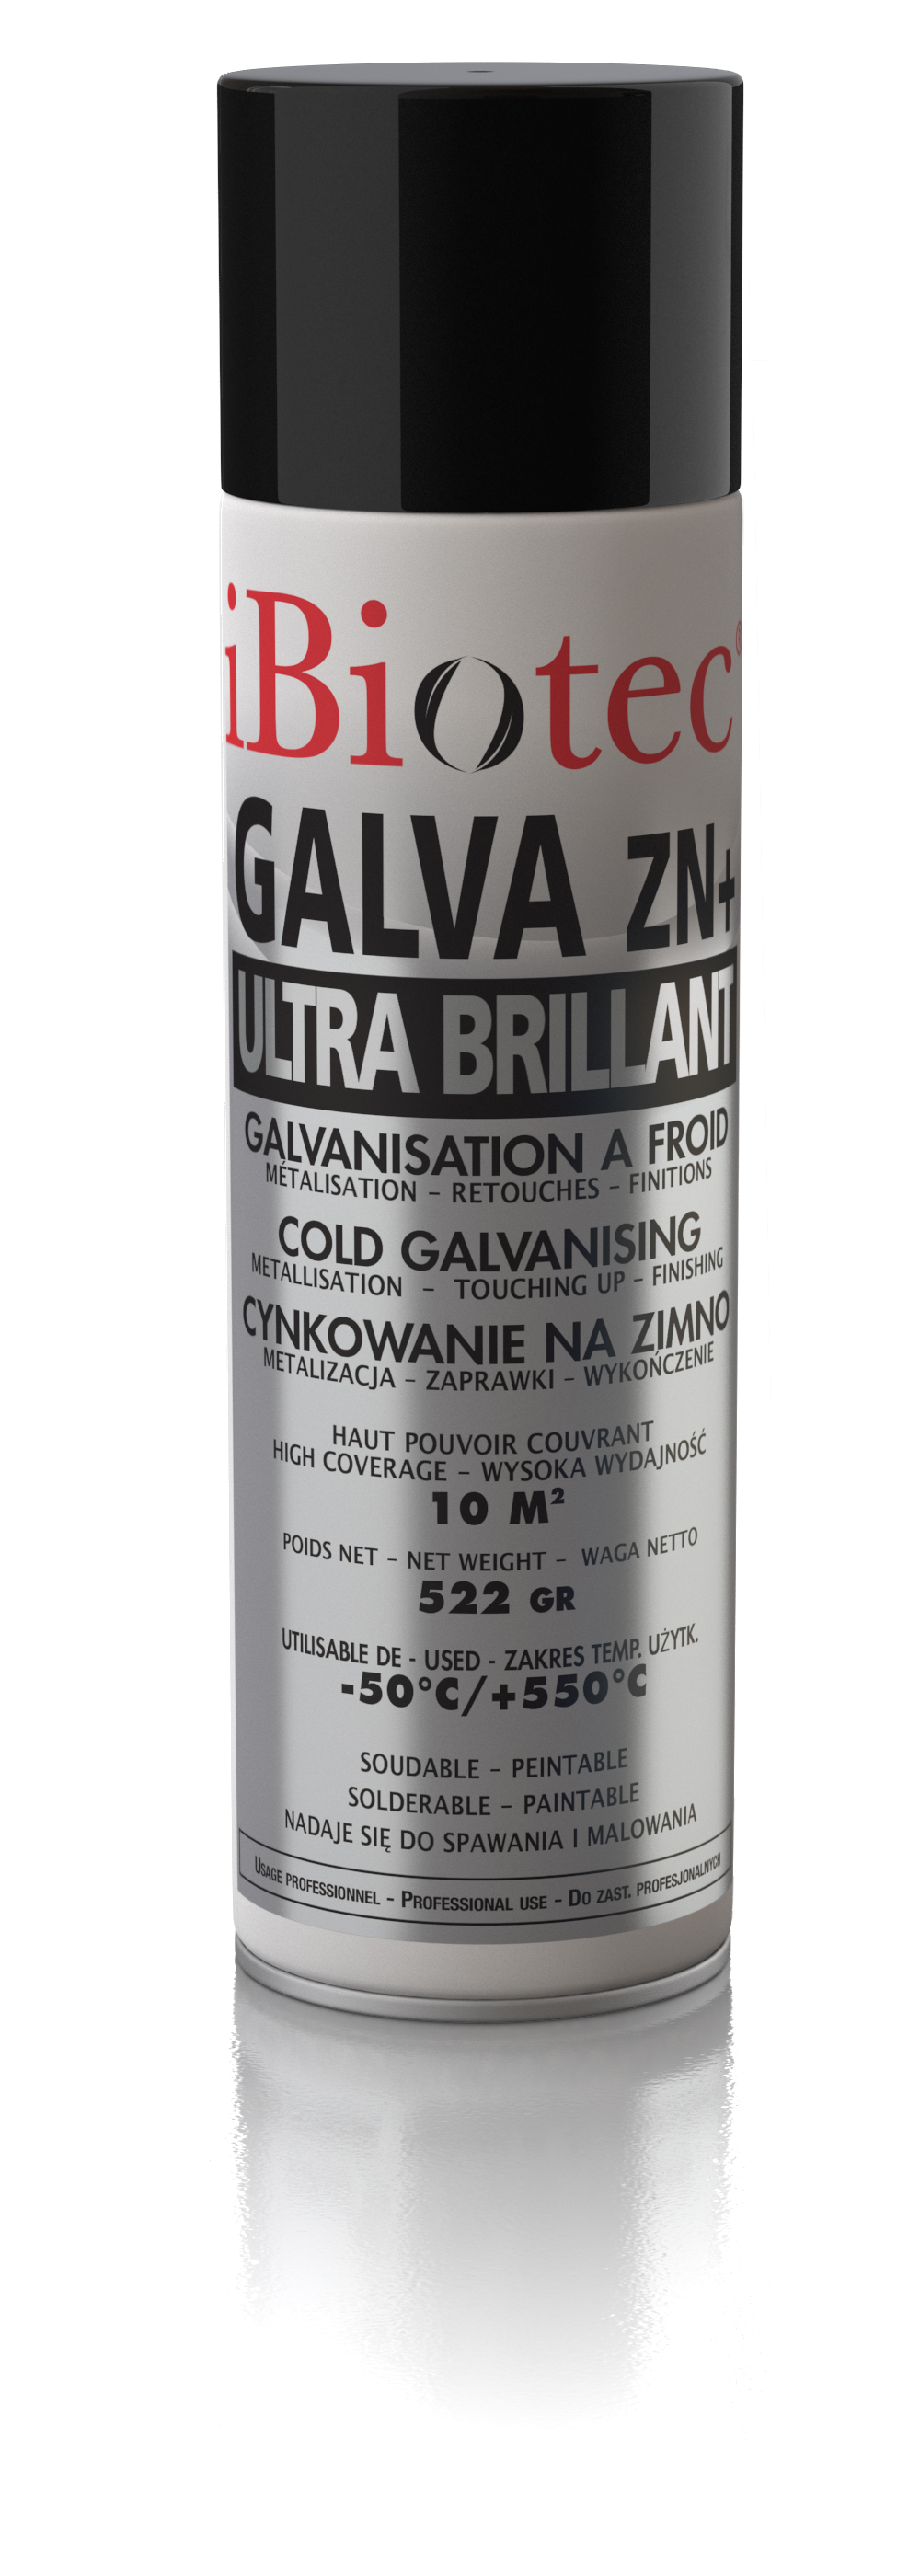 GALVA ZN+ Ultra Brillant